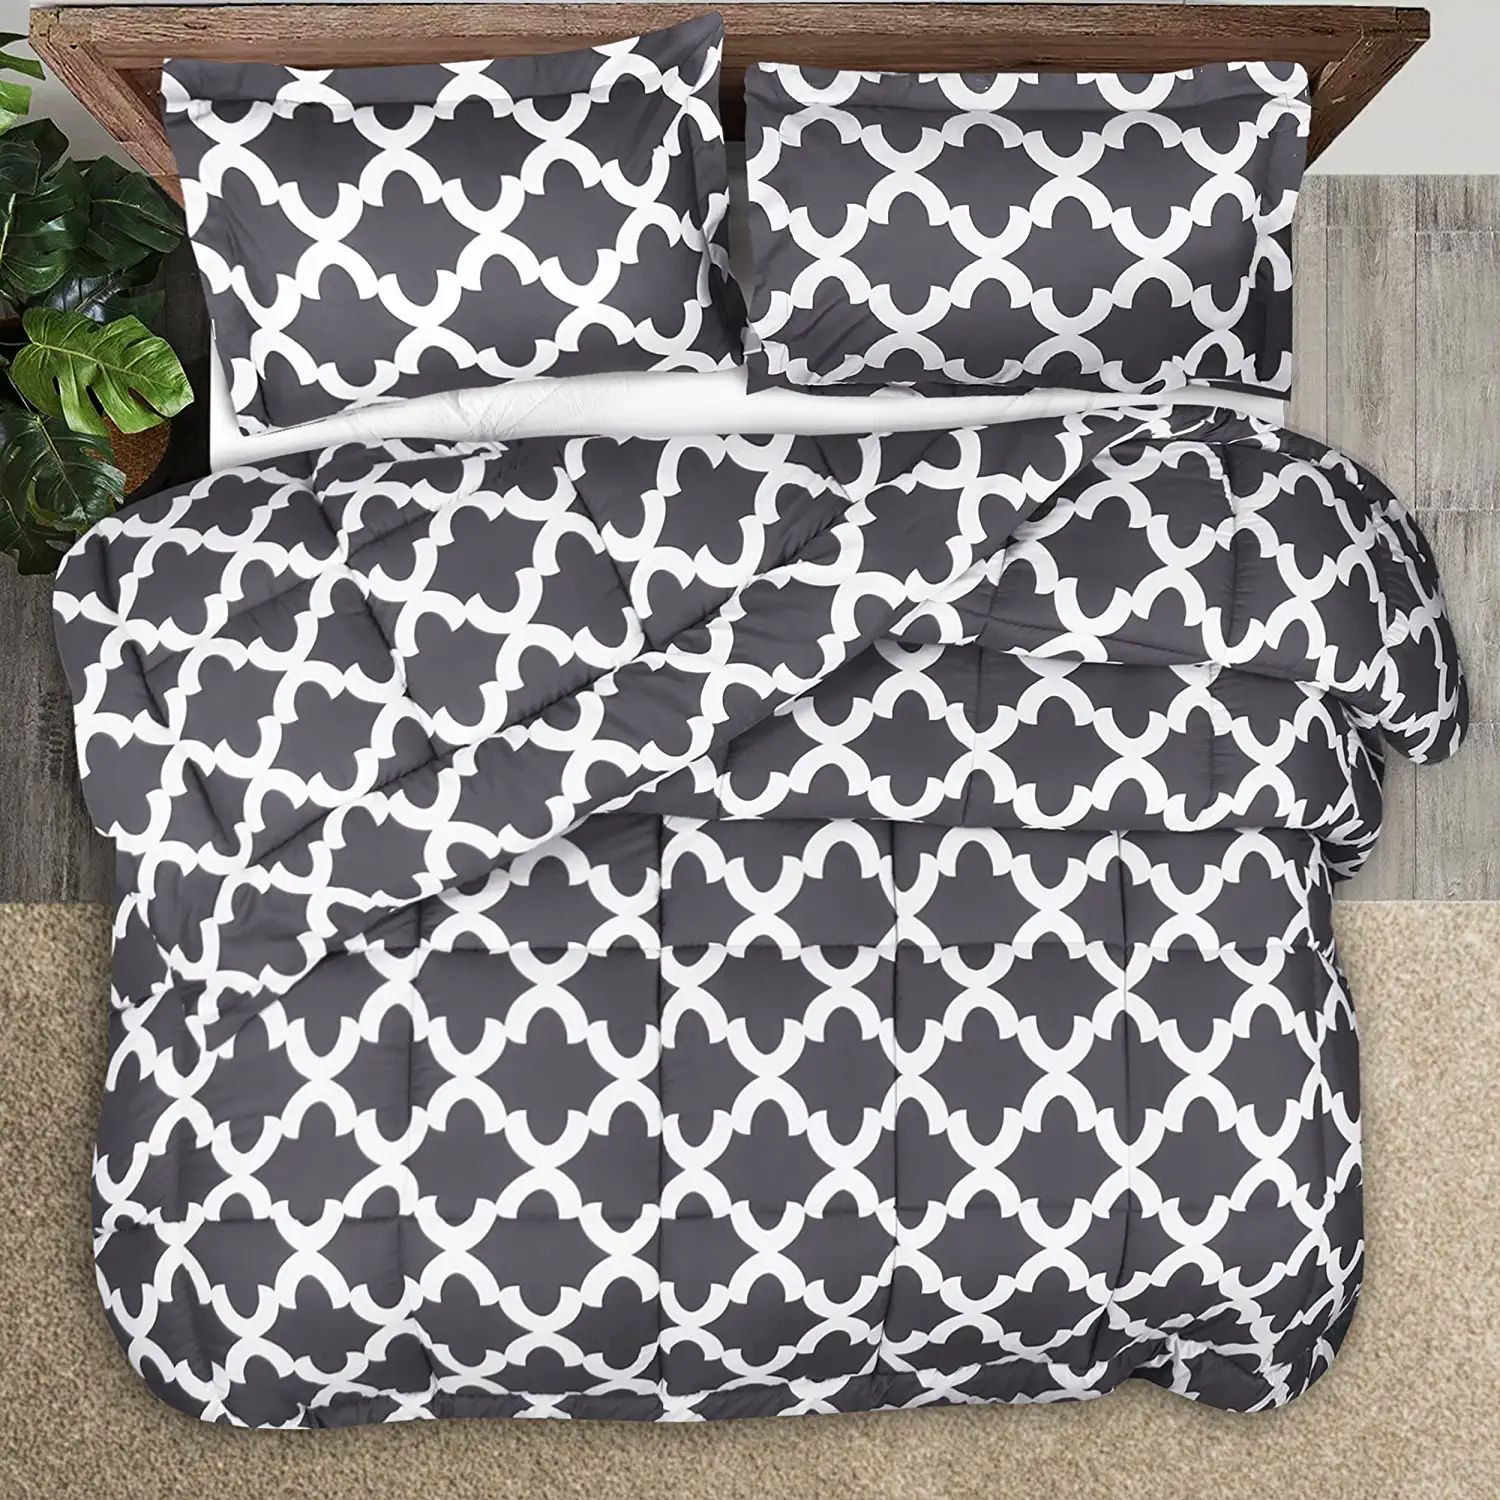 Utopia Bedding Queen Comforter Set (Grey) with 2 Pillow Shams - Bedding  Comforte